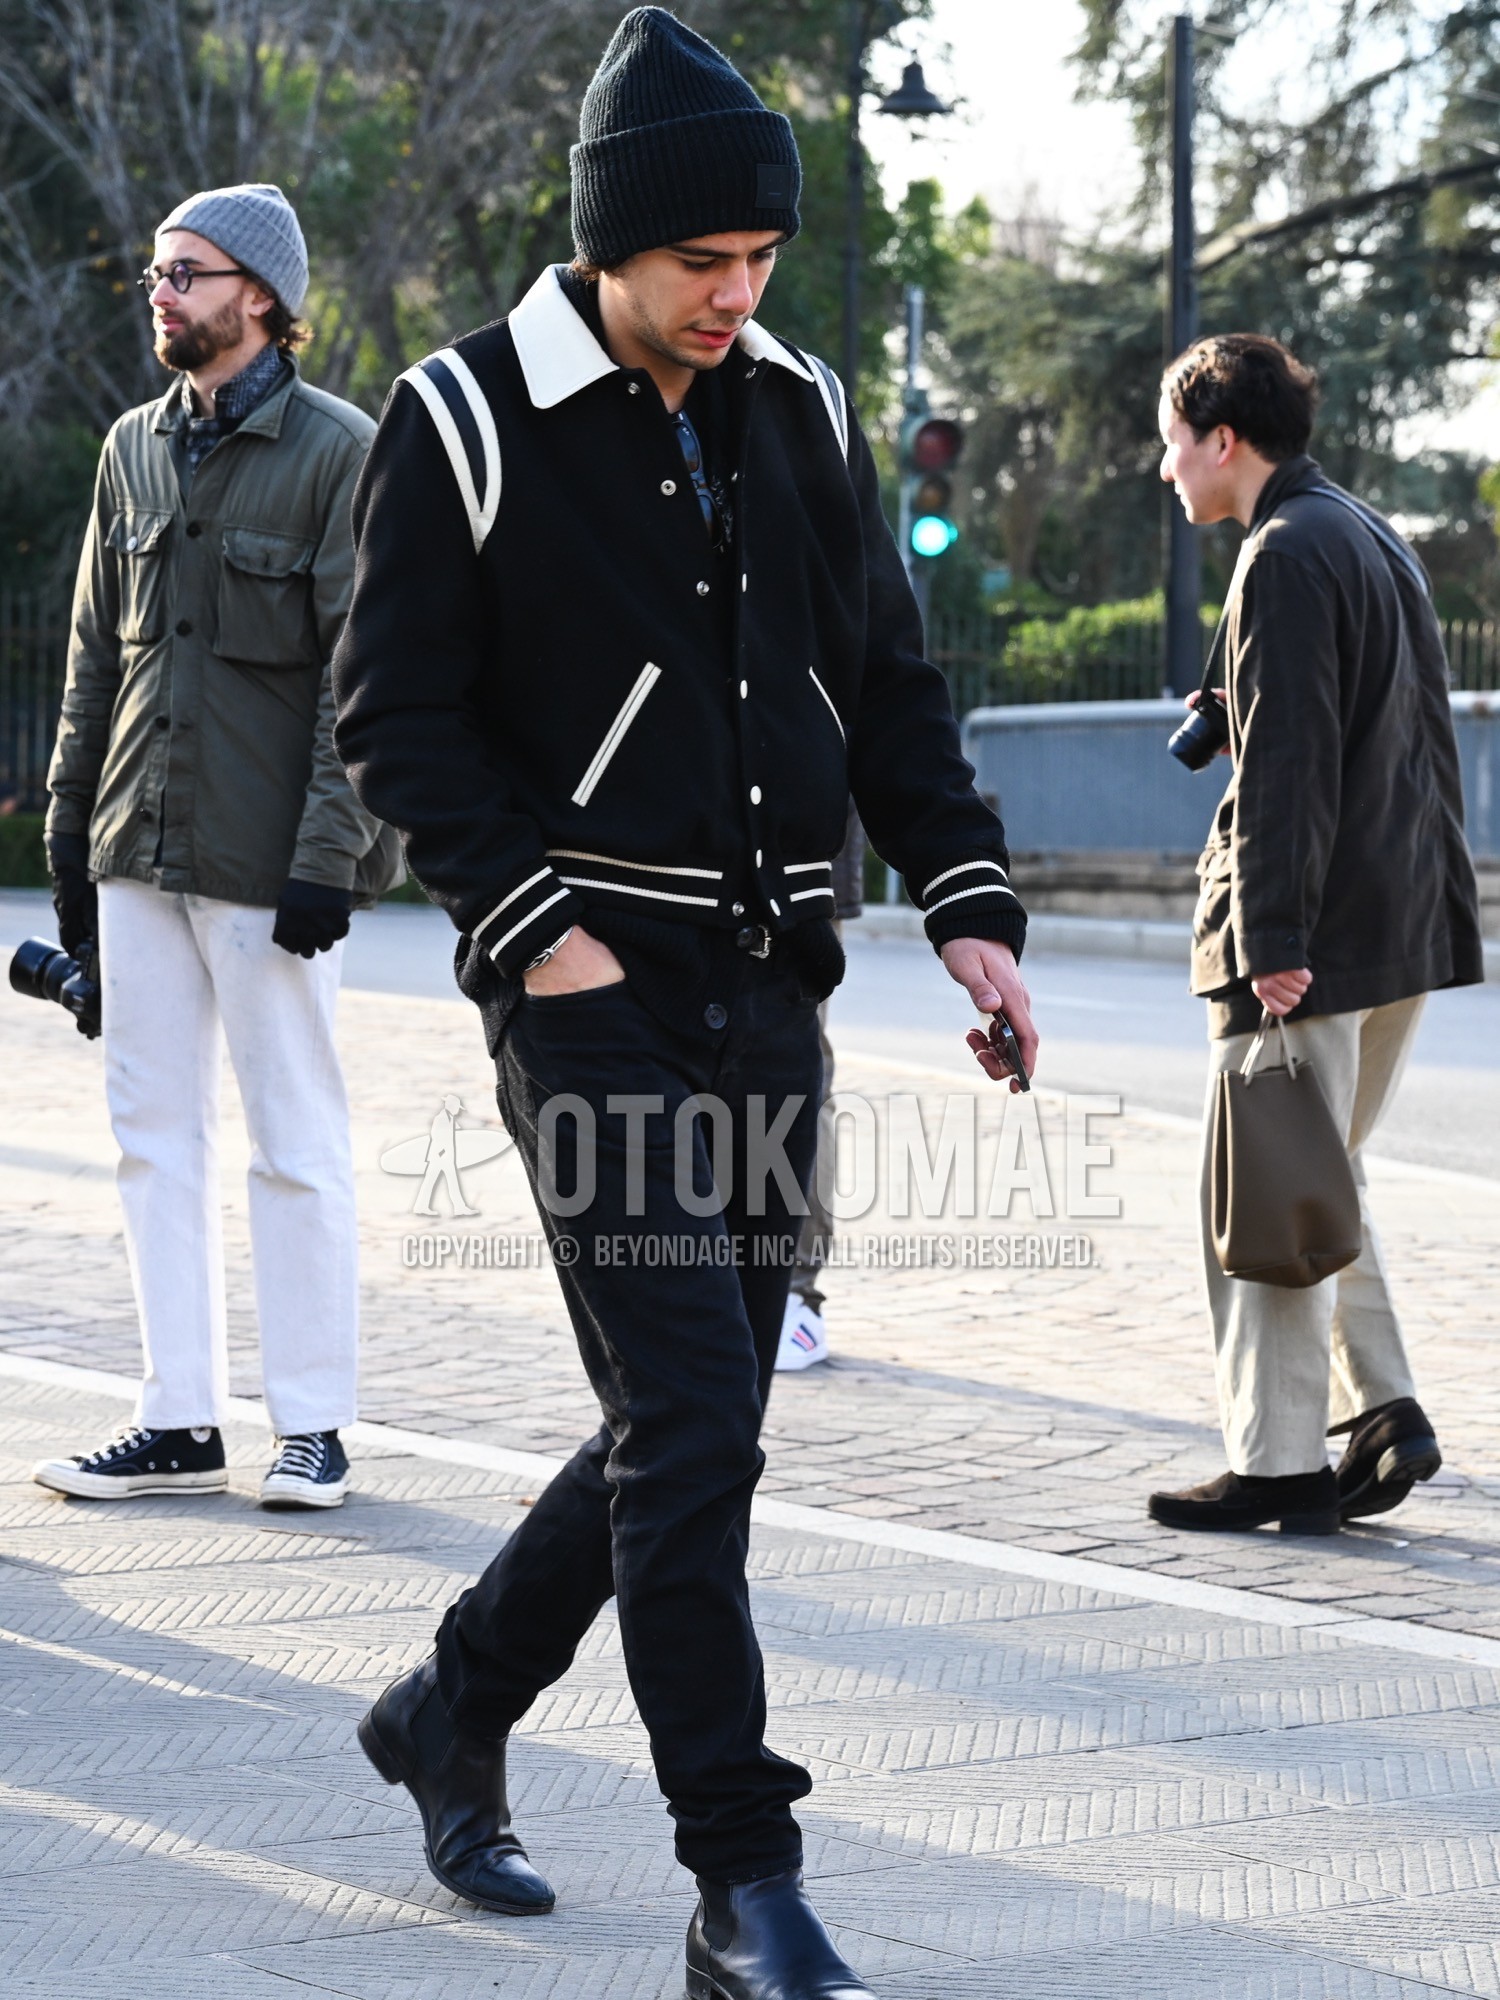 Men's autumn winter outfit with black plain knit cap, black plain stadium jacket, black plain cardigan, black plain denim/jeans, black side-gore boots.